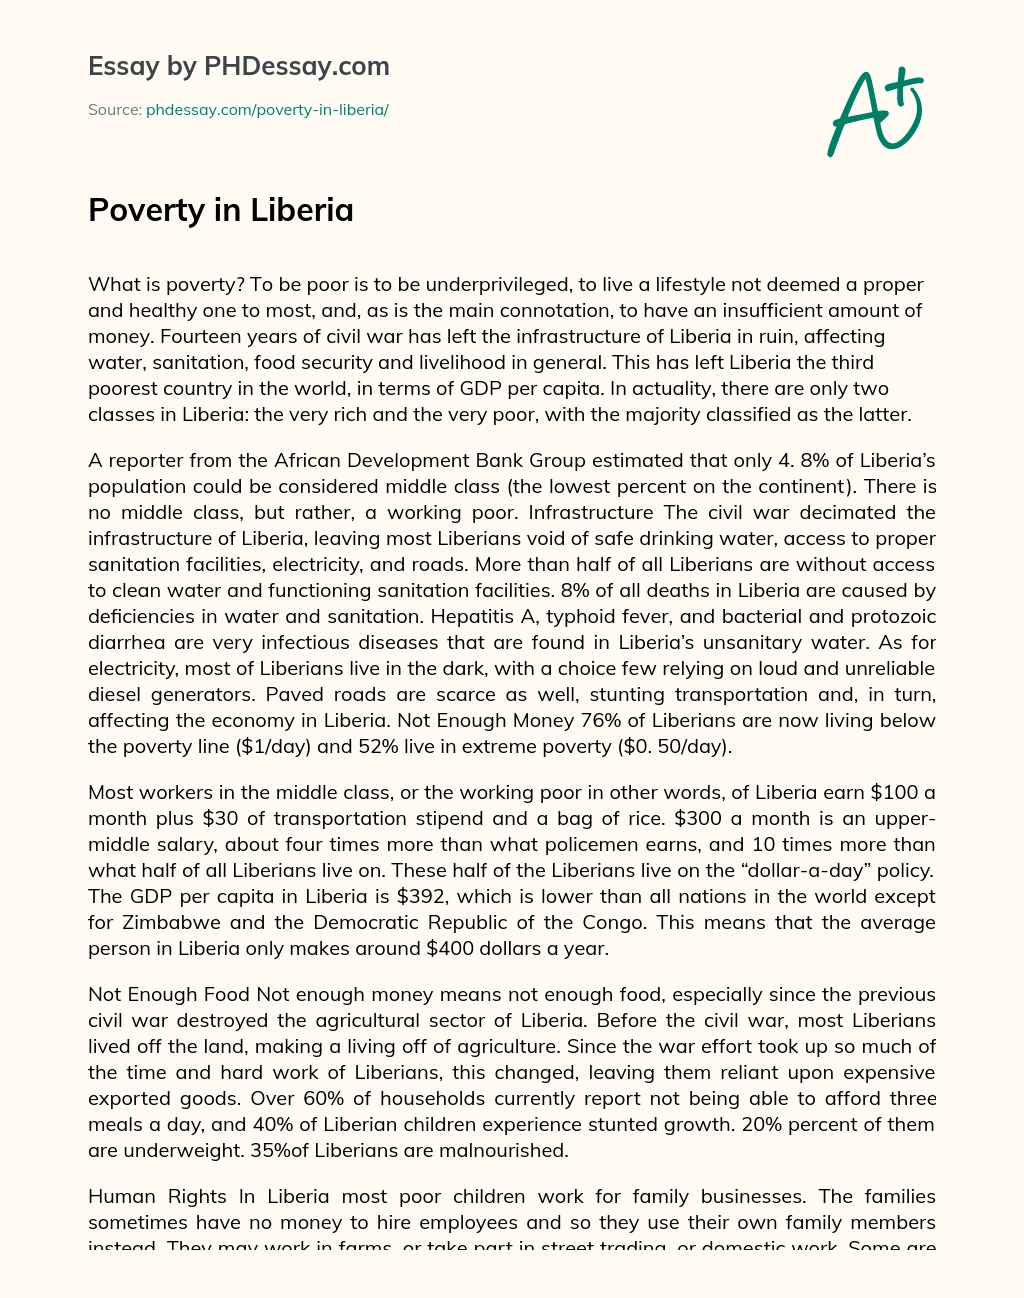 Poverty in Liberia essay